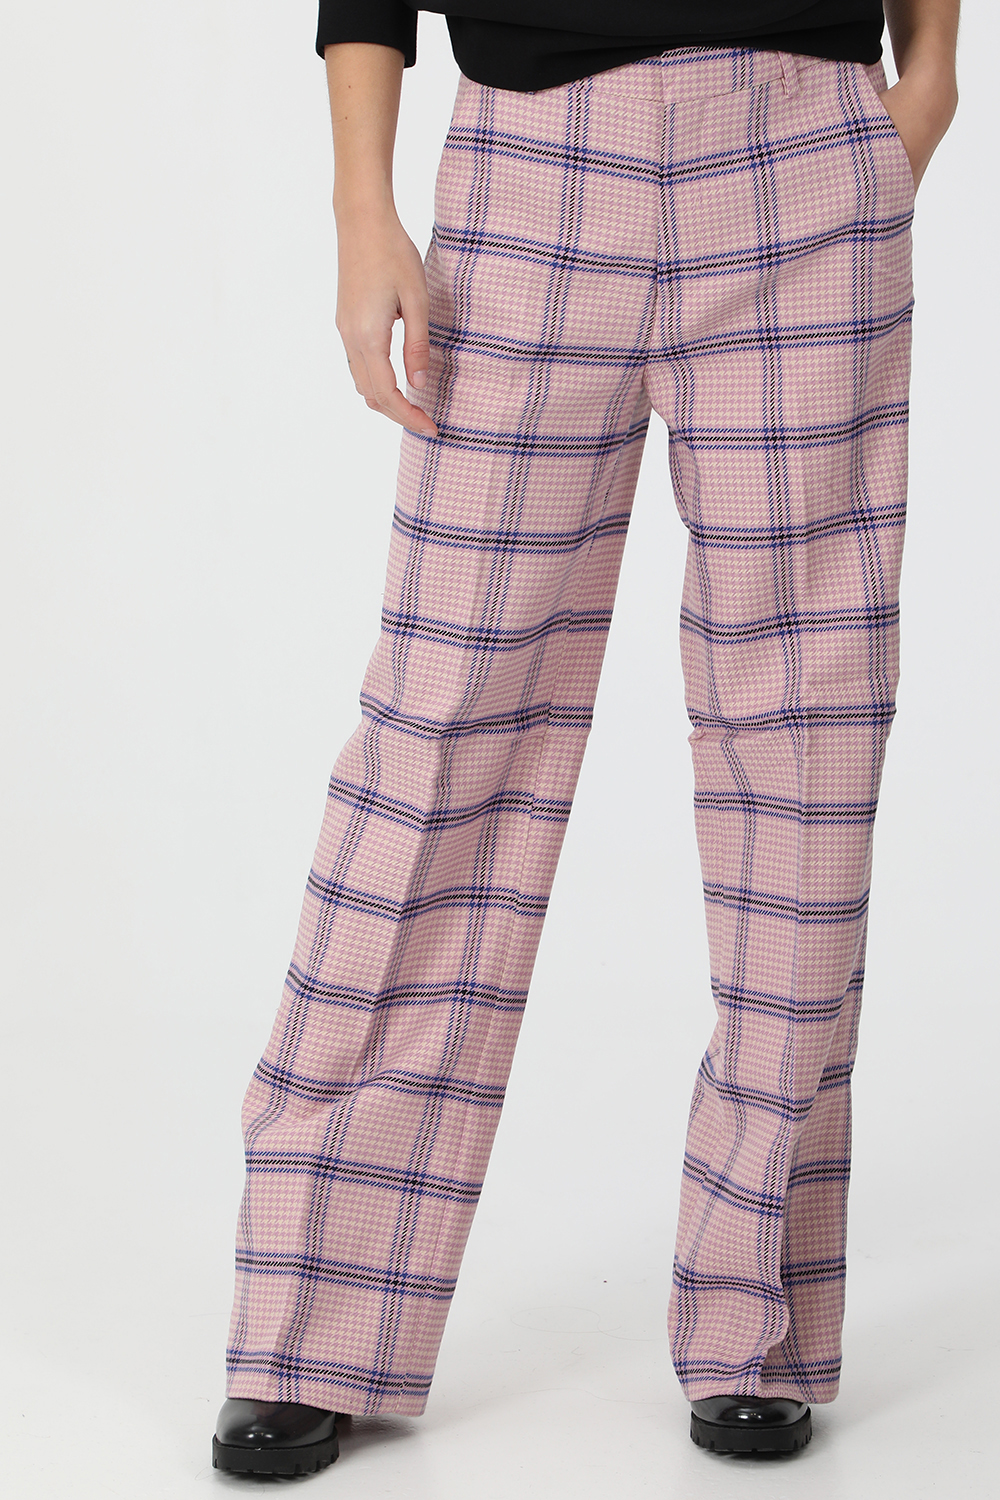 SCOTCH & SODA – Γυναικεια παντελονα SCOTCH & SODA Edie tailored wide leg ροζ εκρου μπλε